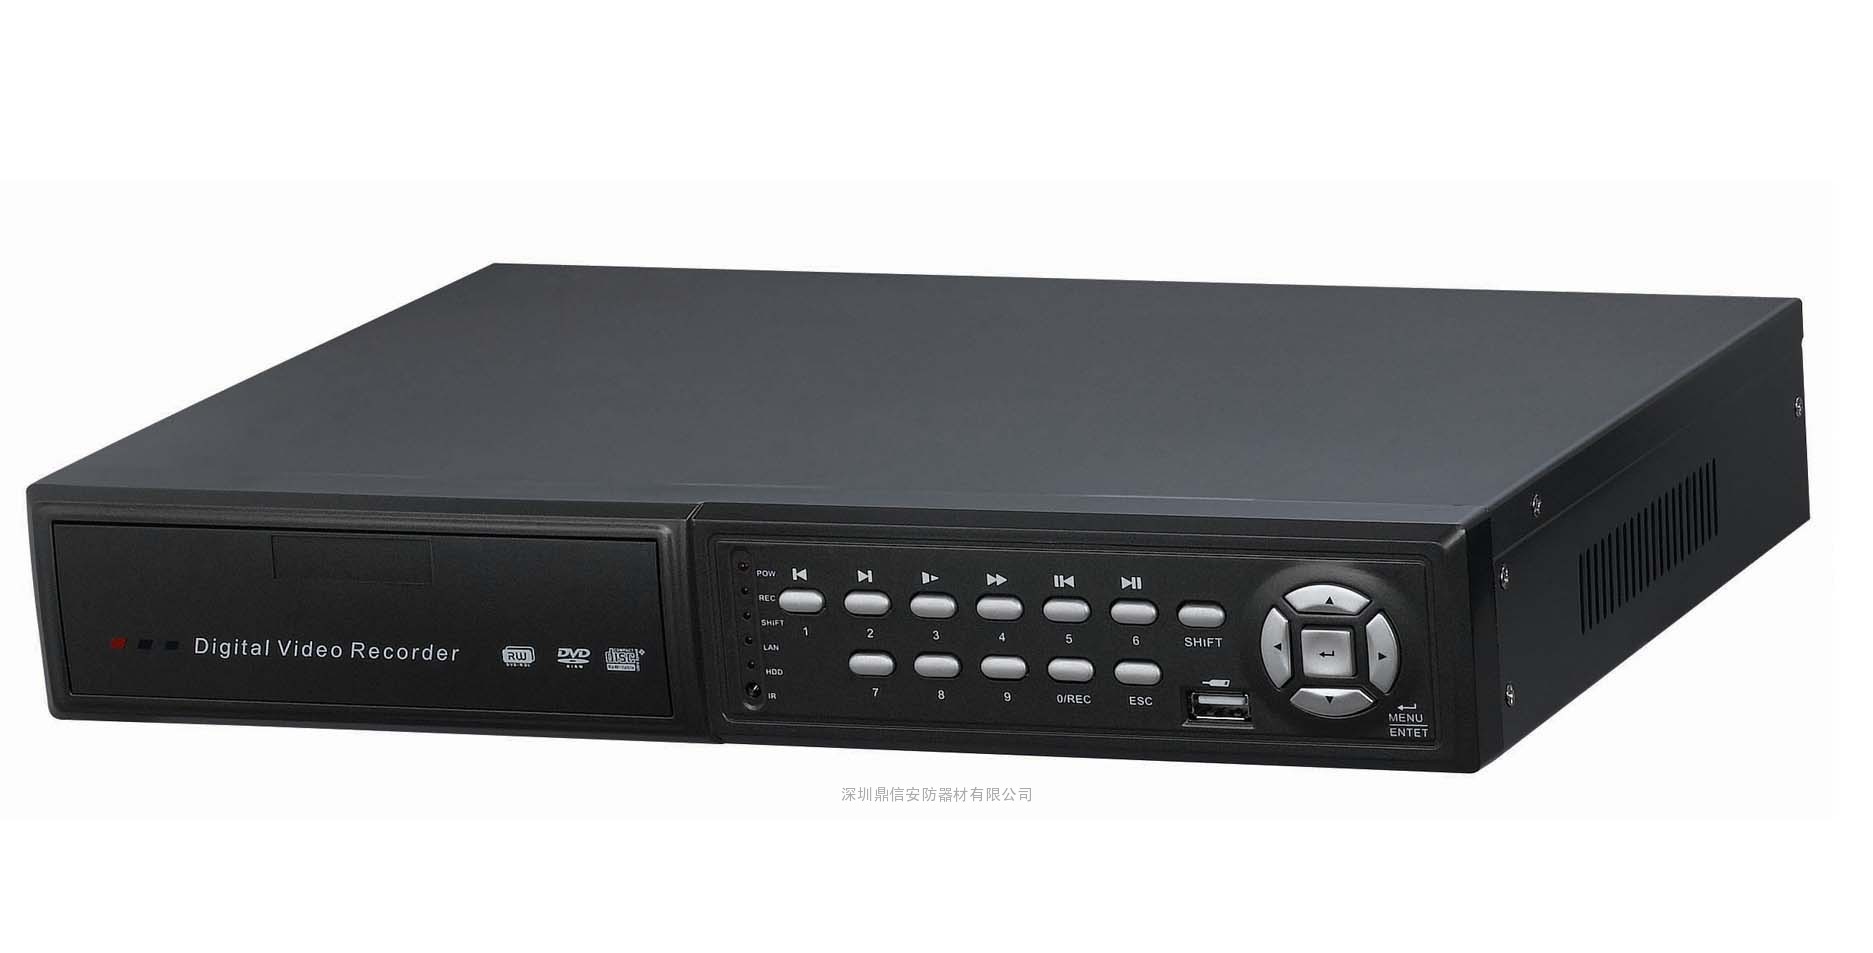 八路H.264硬盘录像机DX-4007